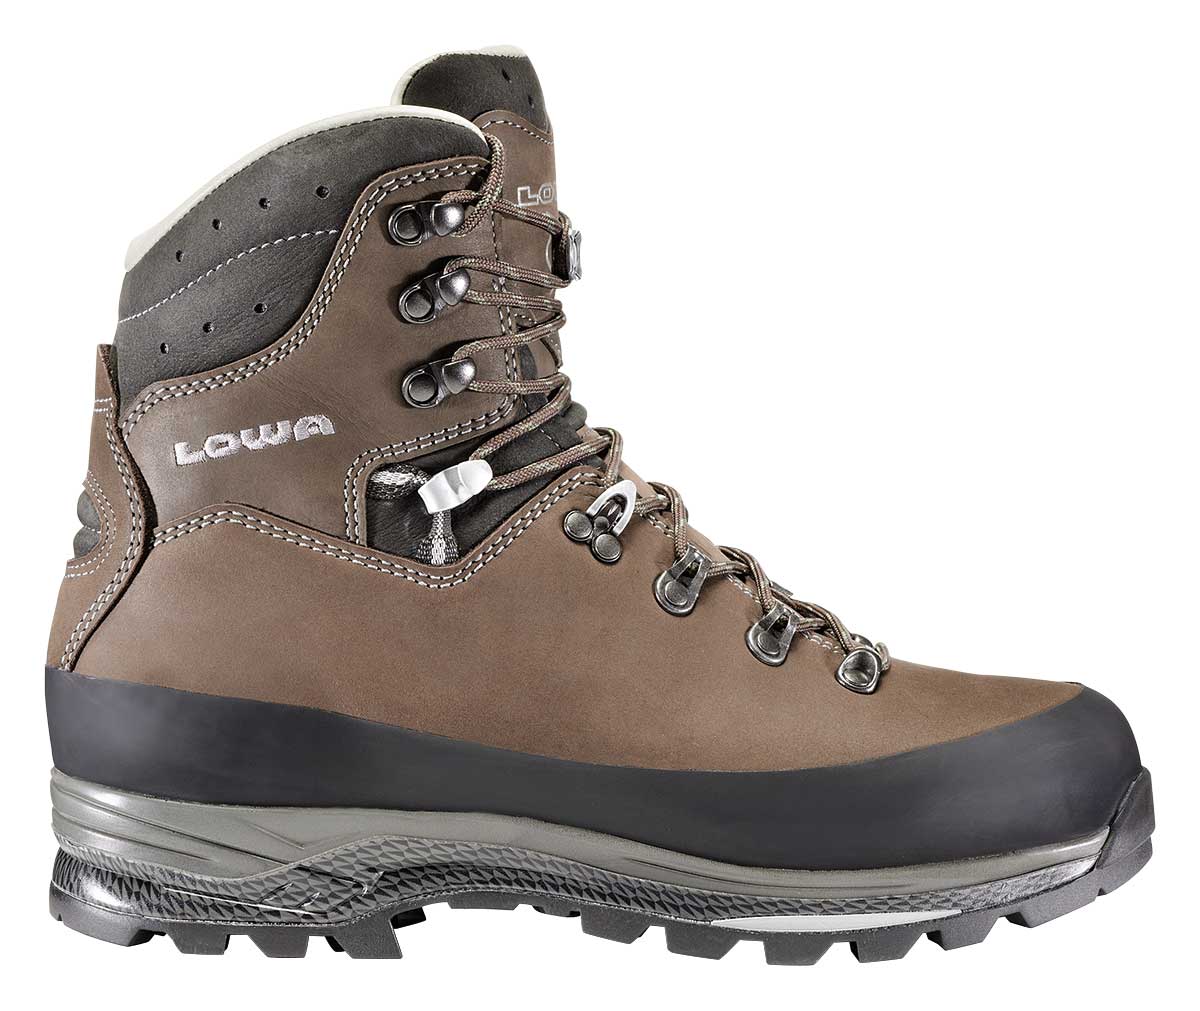 Lowa - Tibet LL - Hiking Boots - Men's